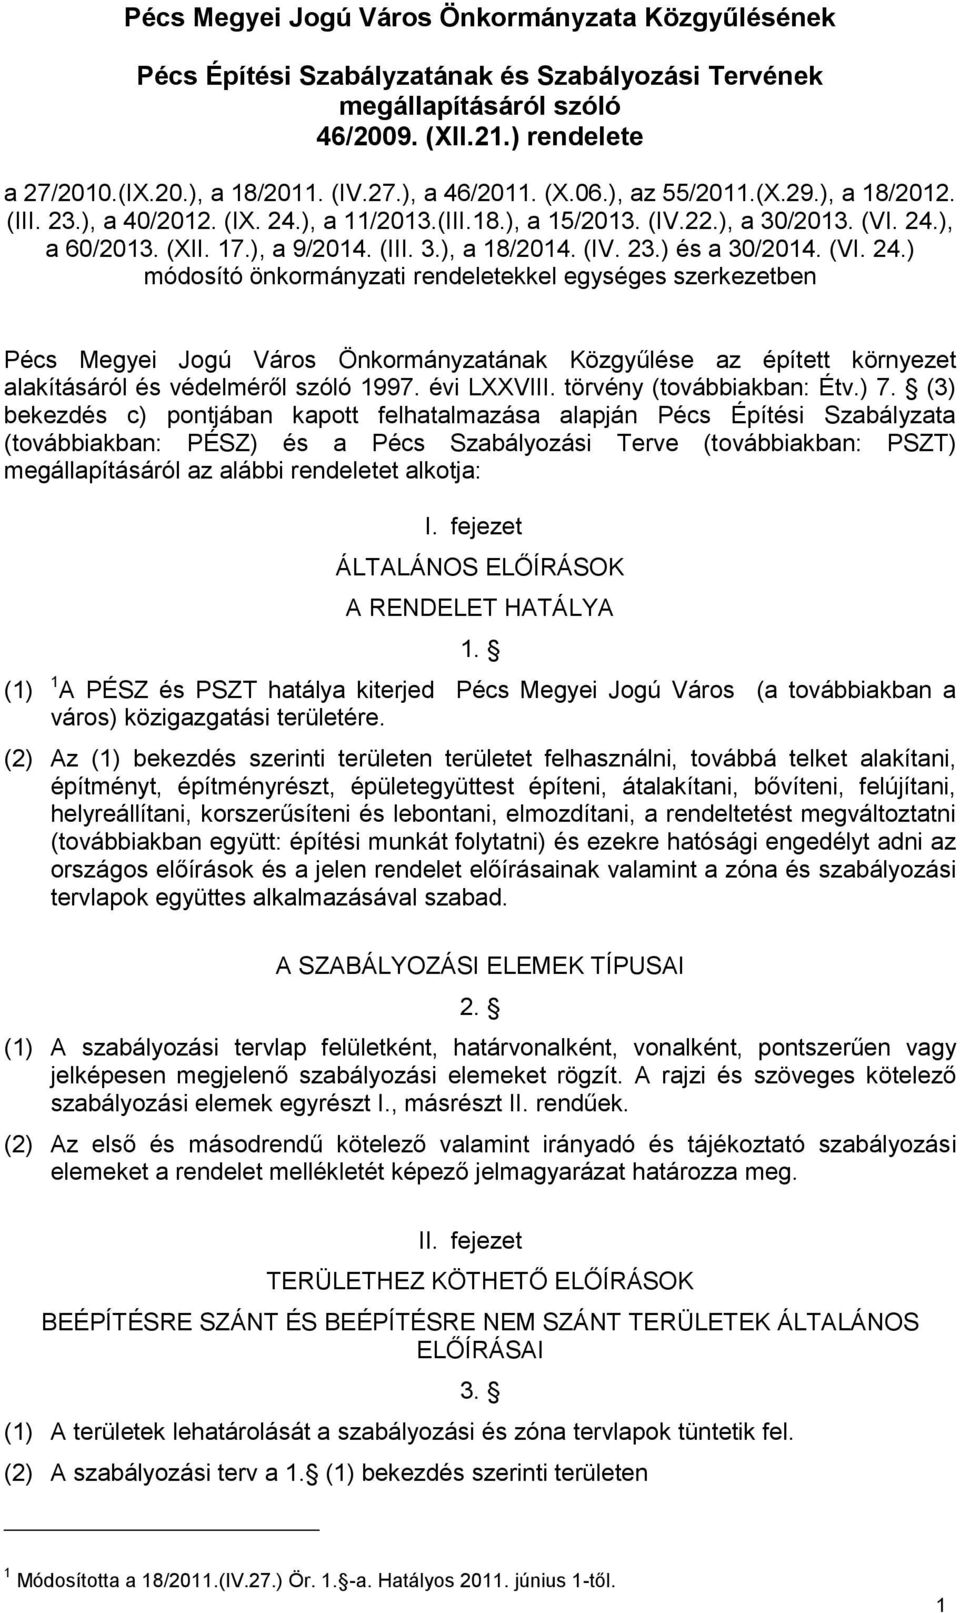 (VI. 24.) módosító önkormányzati rendeletekkel egységes szerkezetben Pécs Megyei Jogú Város Önkormányzatának Közgyűlése az épített környezet alakításáról és védelméről szóló 1997. évi LXXVIII.